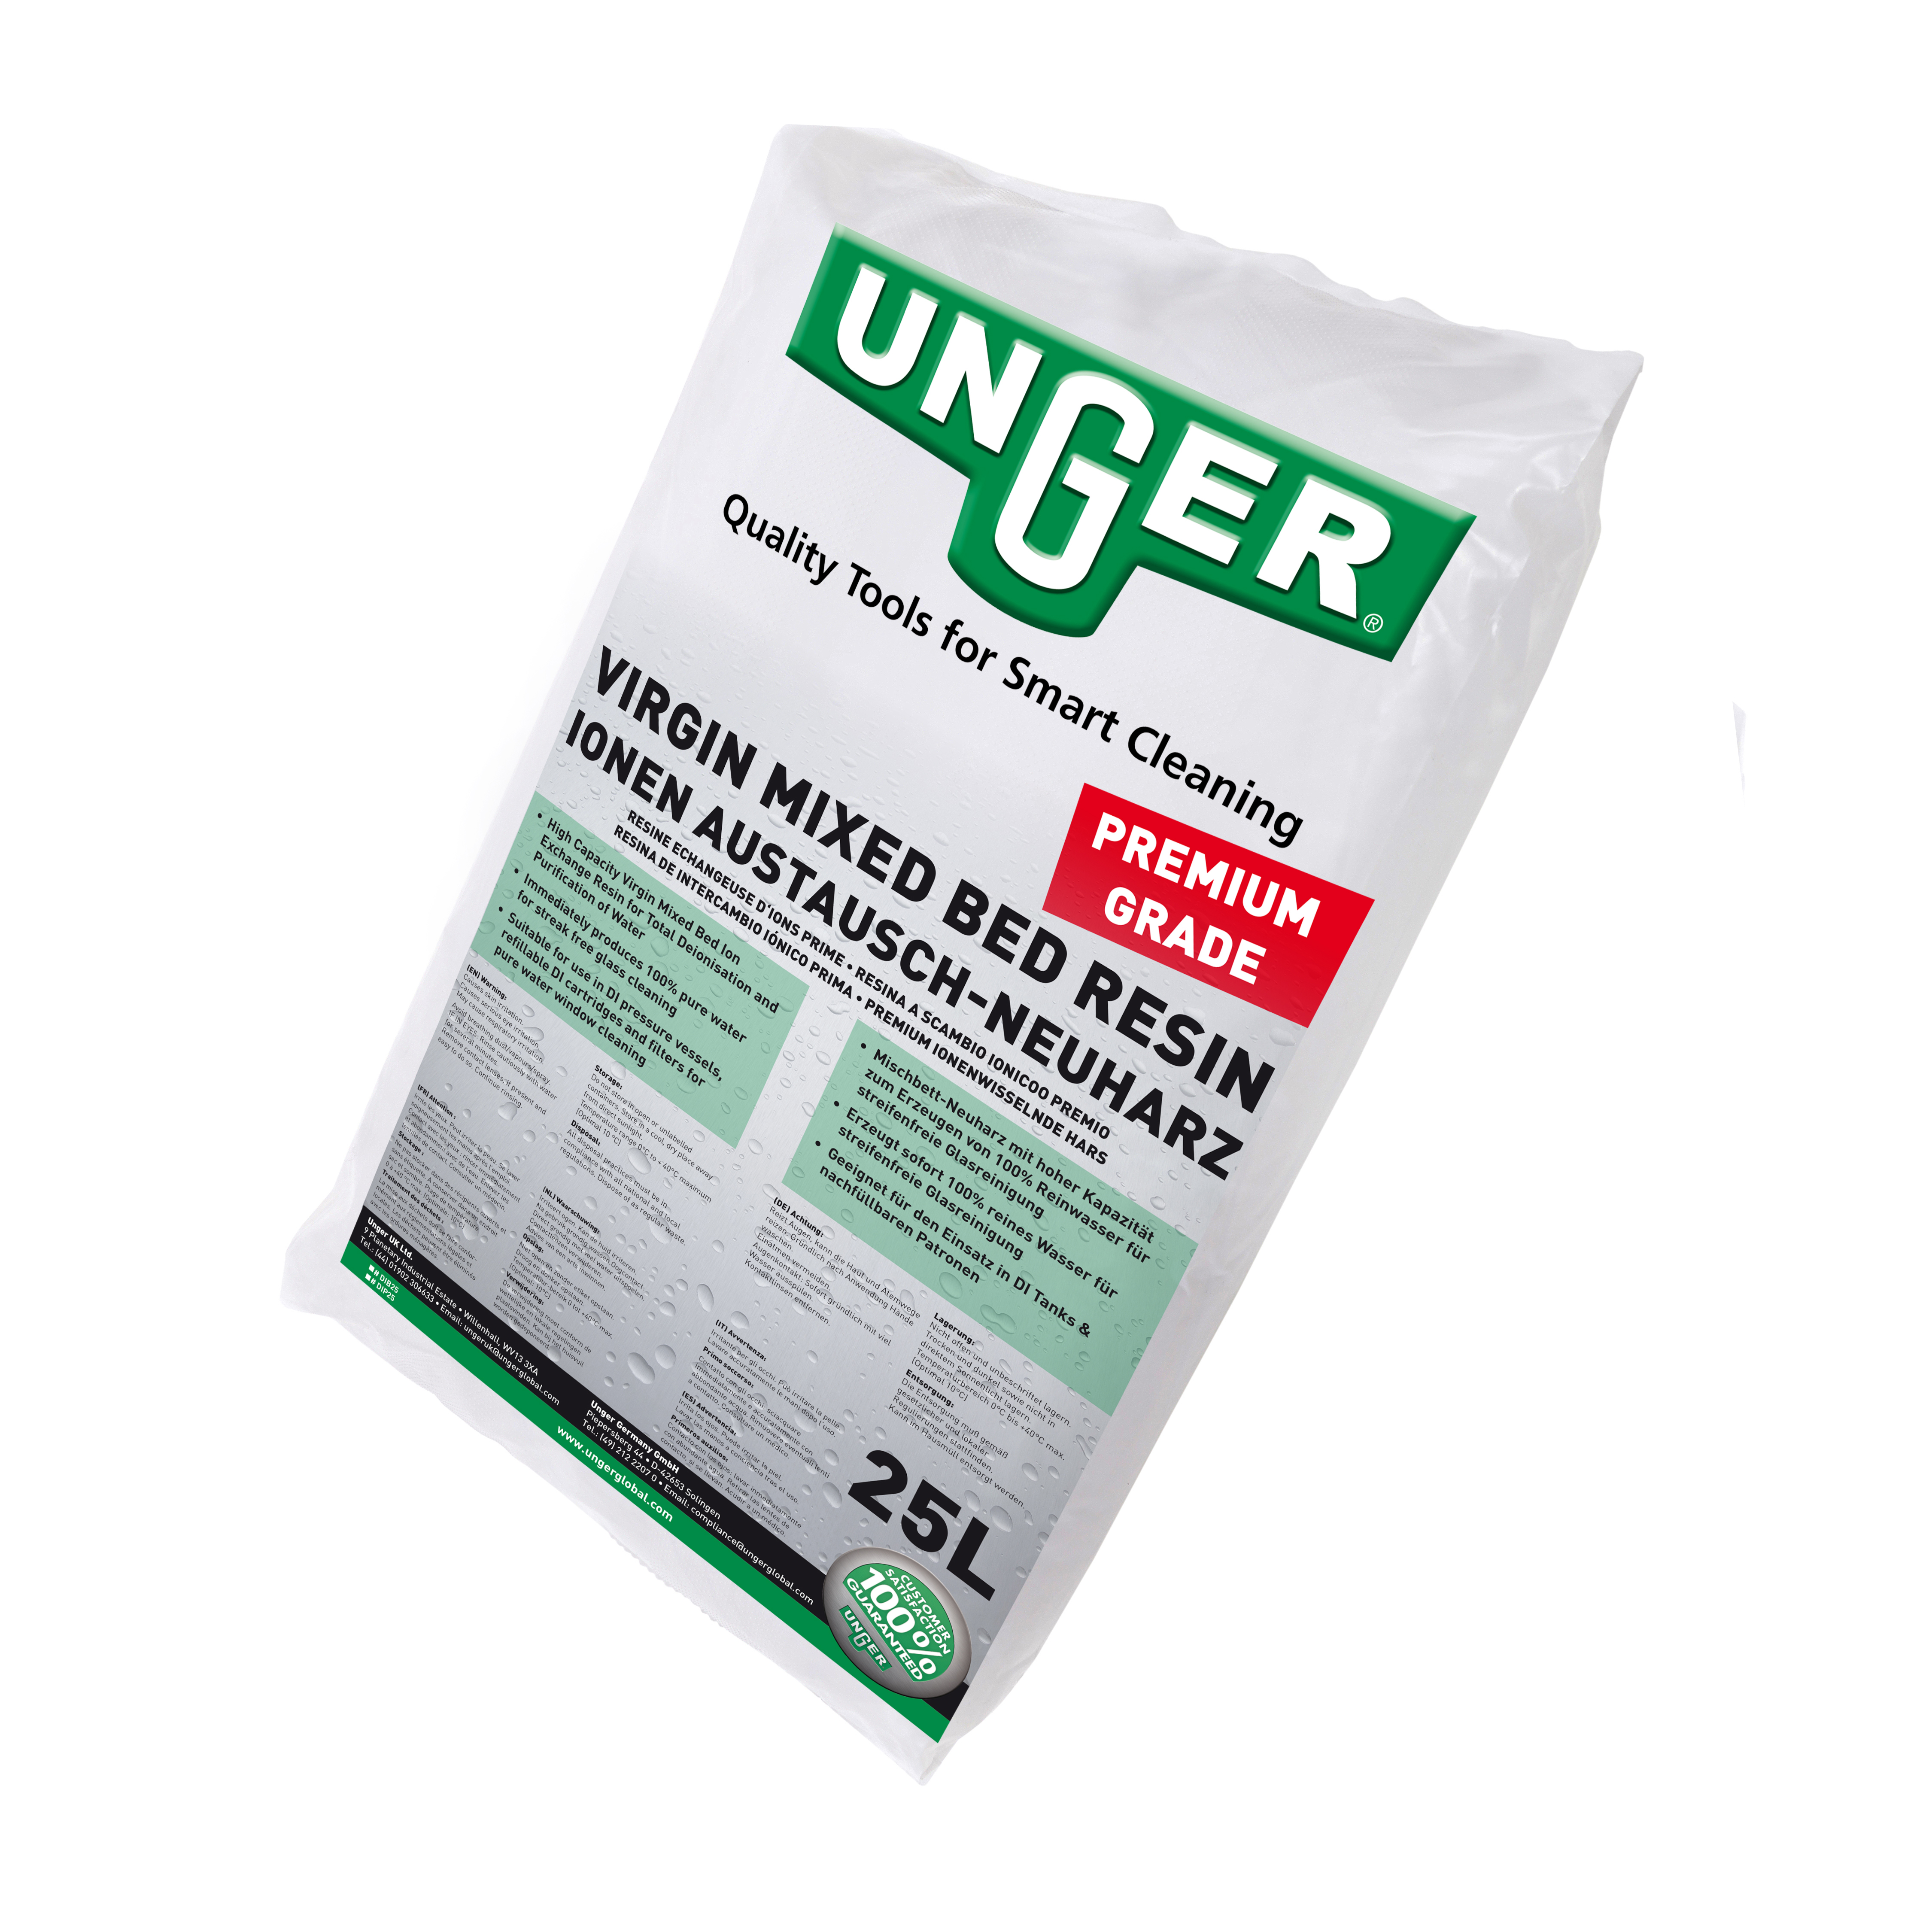 Premium Ionen-Austauschharz Sack 25 Liter Für UNGER DI Filter